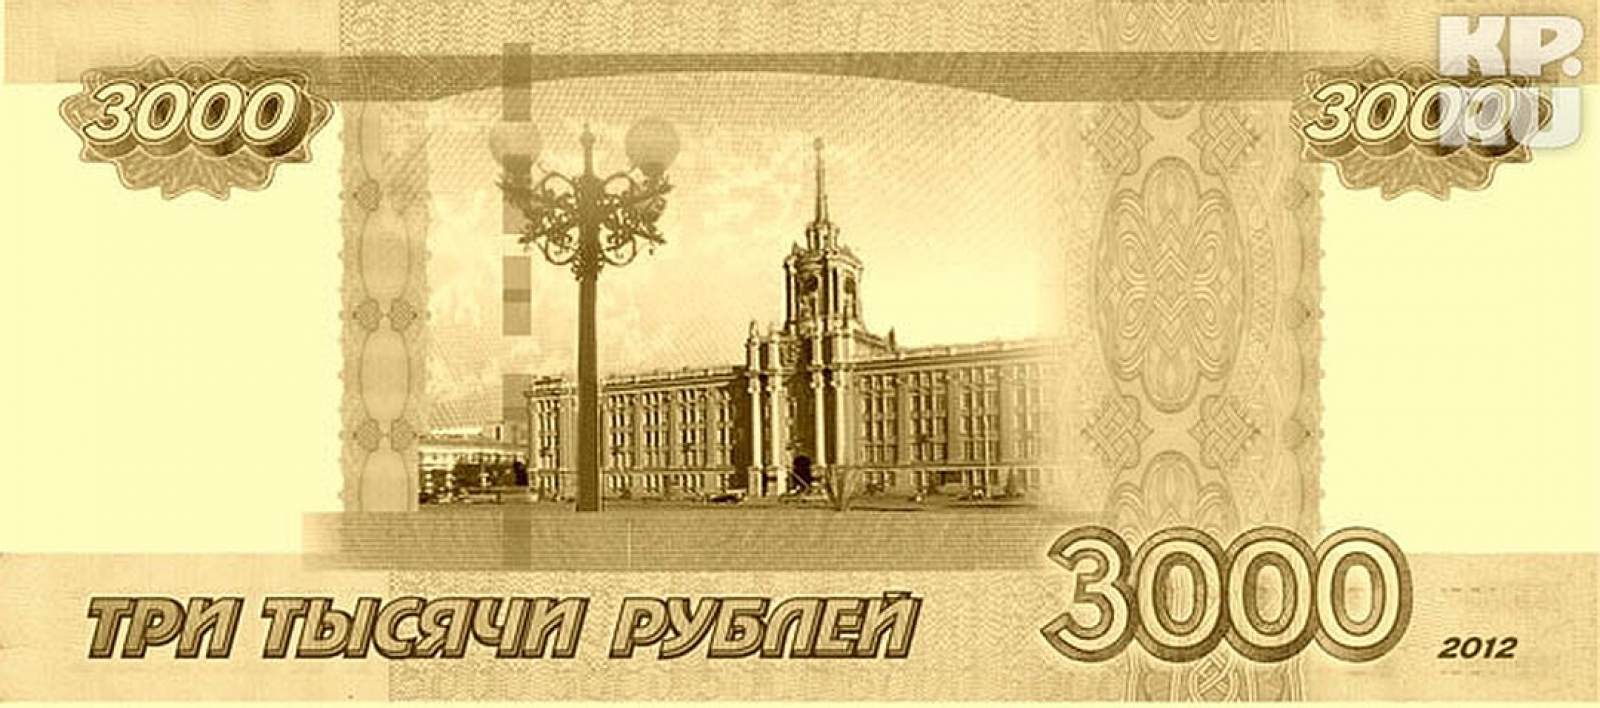 В размере 3000 рублей. Купюра 3000 рублей. Ру-3000. Банкнот 3000 рублей. 3000 Рублей одной купюрой.